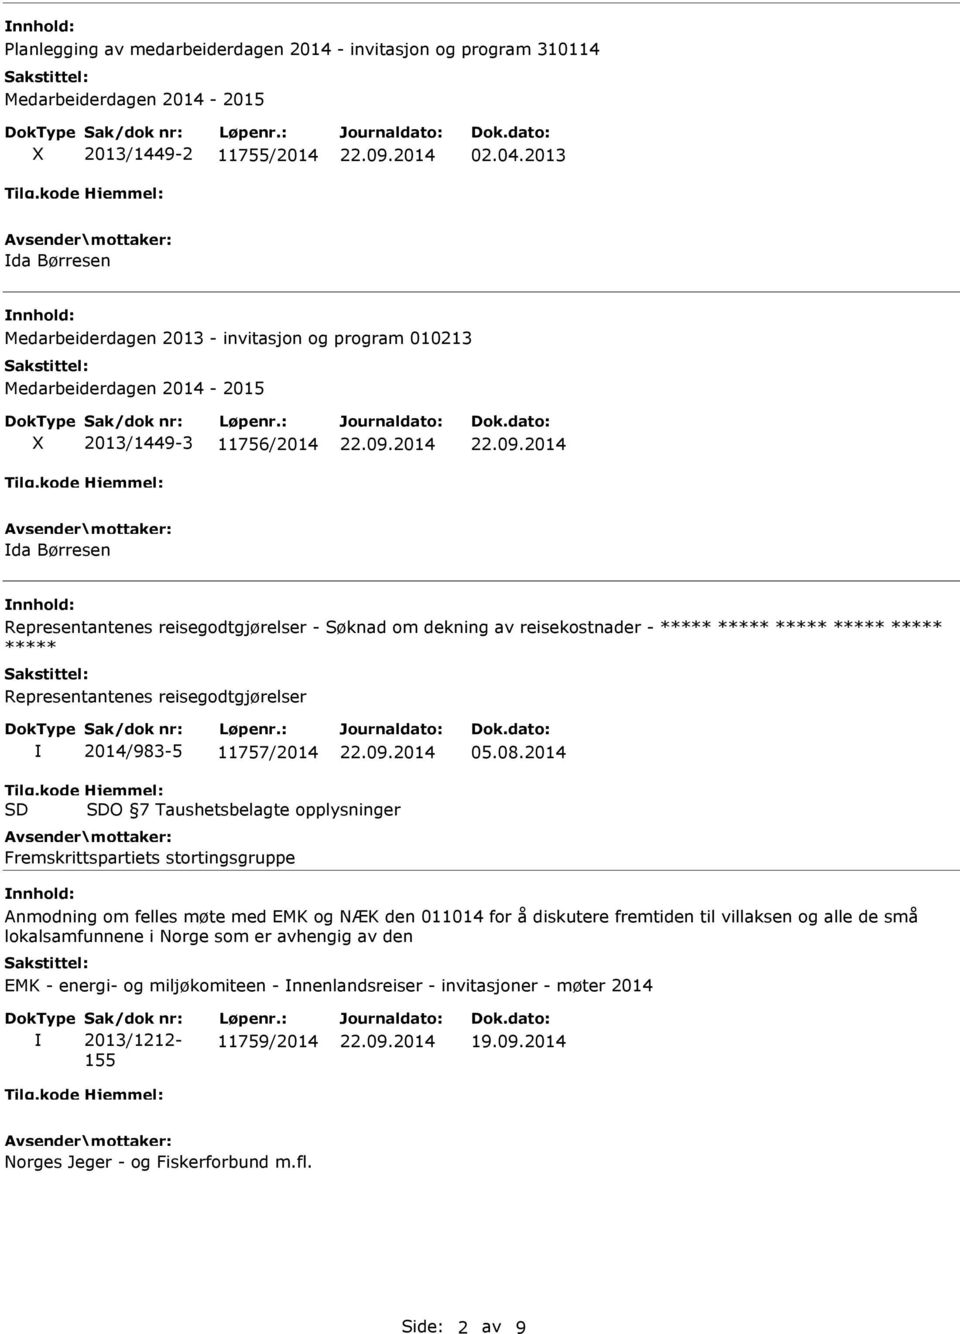 dekning av reisekostnader - Representantenes reisegodtgjørelser 2014/983-5 11757/2014 05.08.